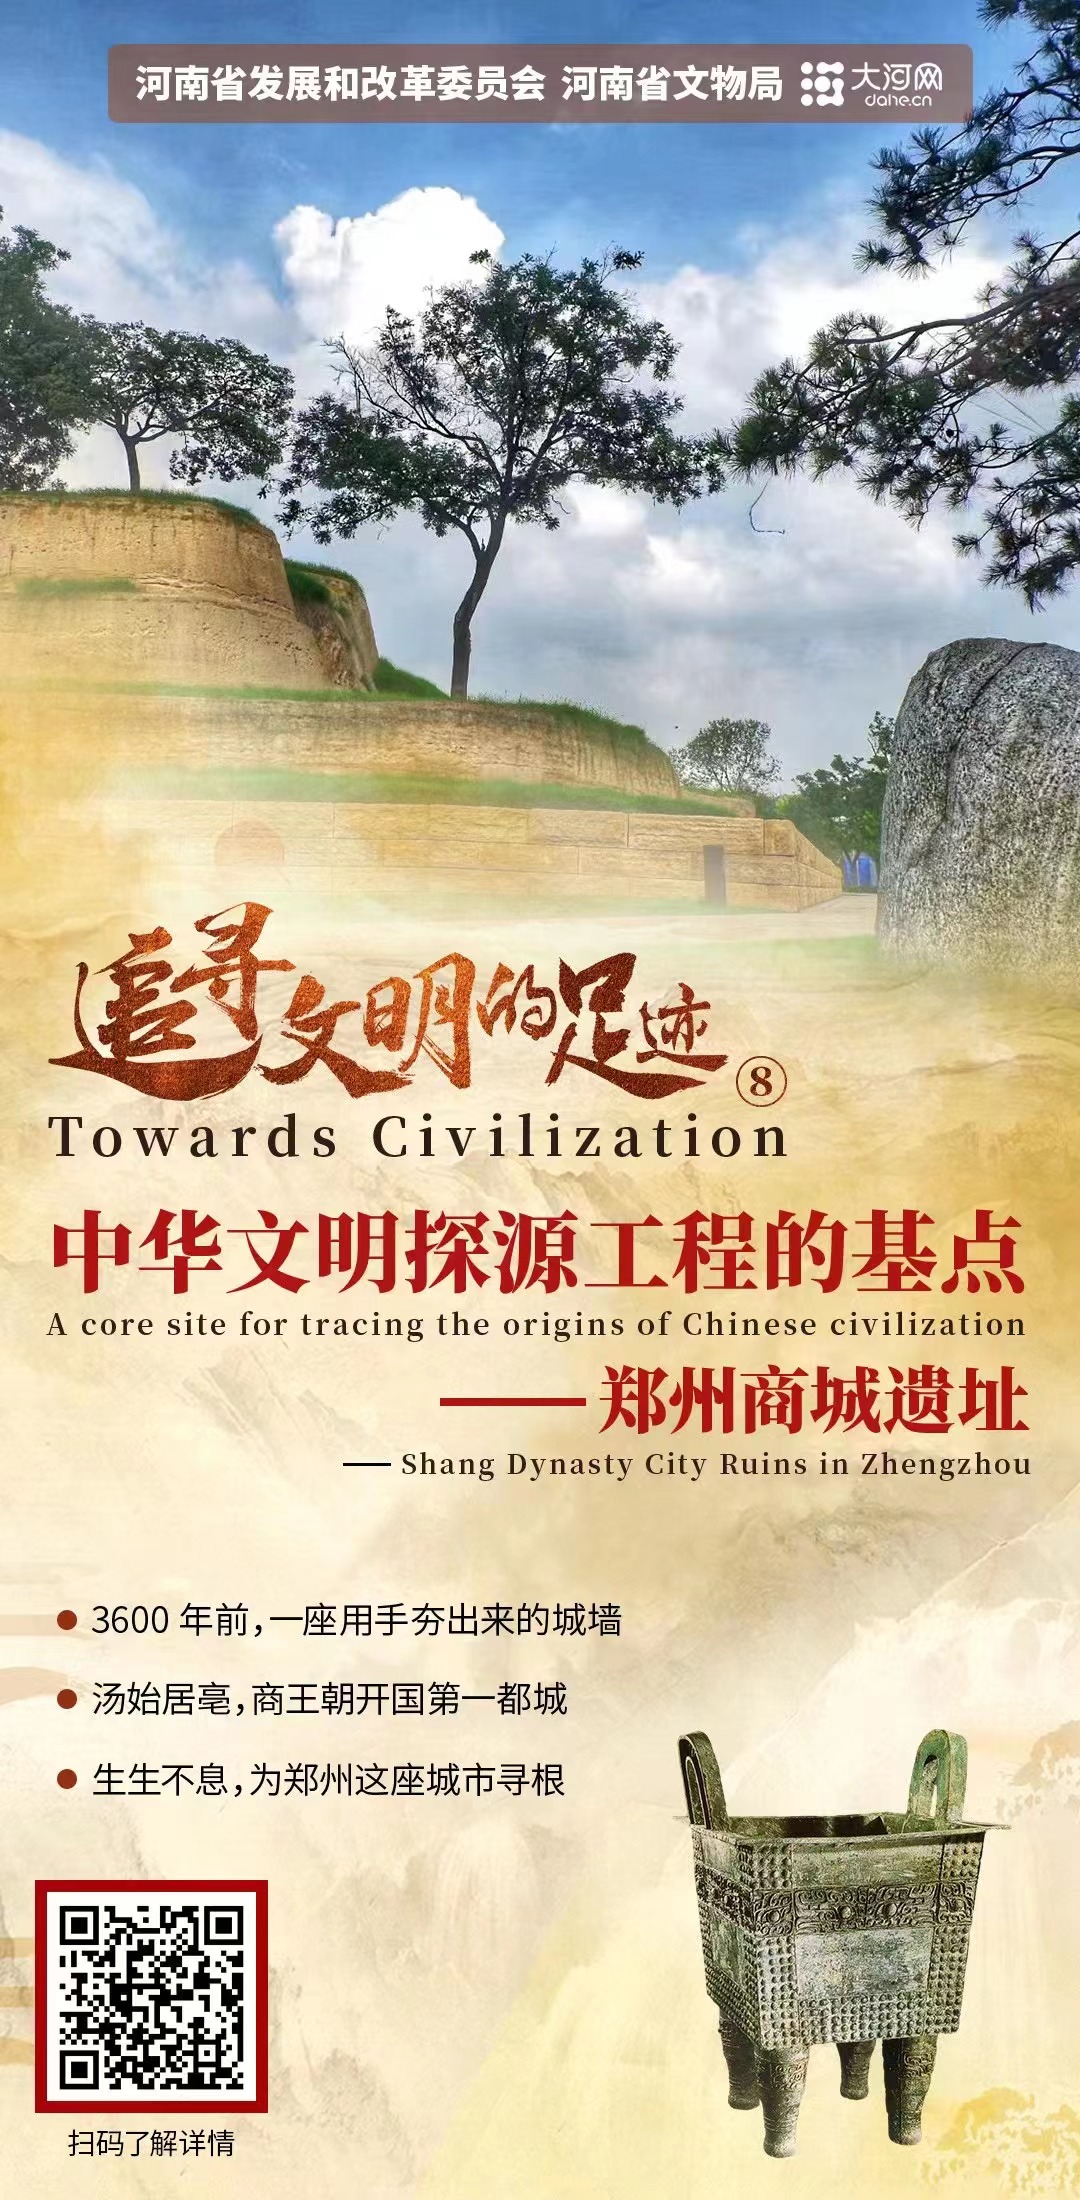 追寻文明的足迹⑧丨中华文明探源工程的基点——郑州商城遗址